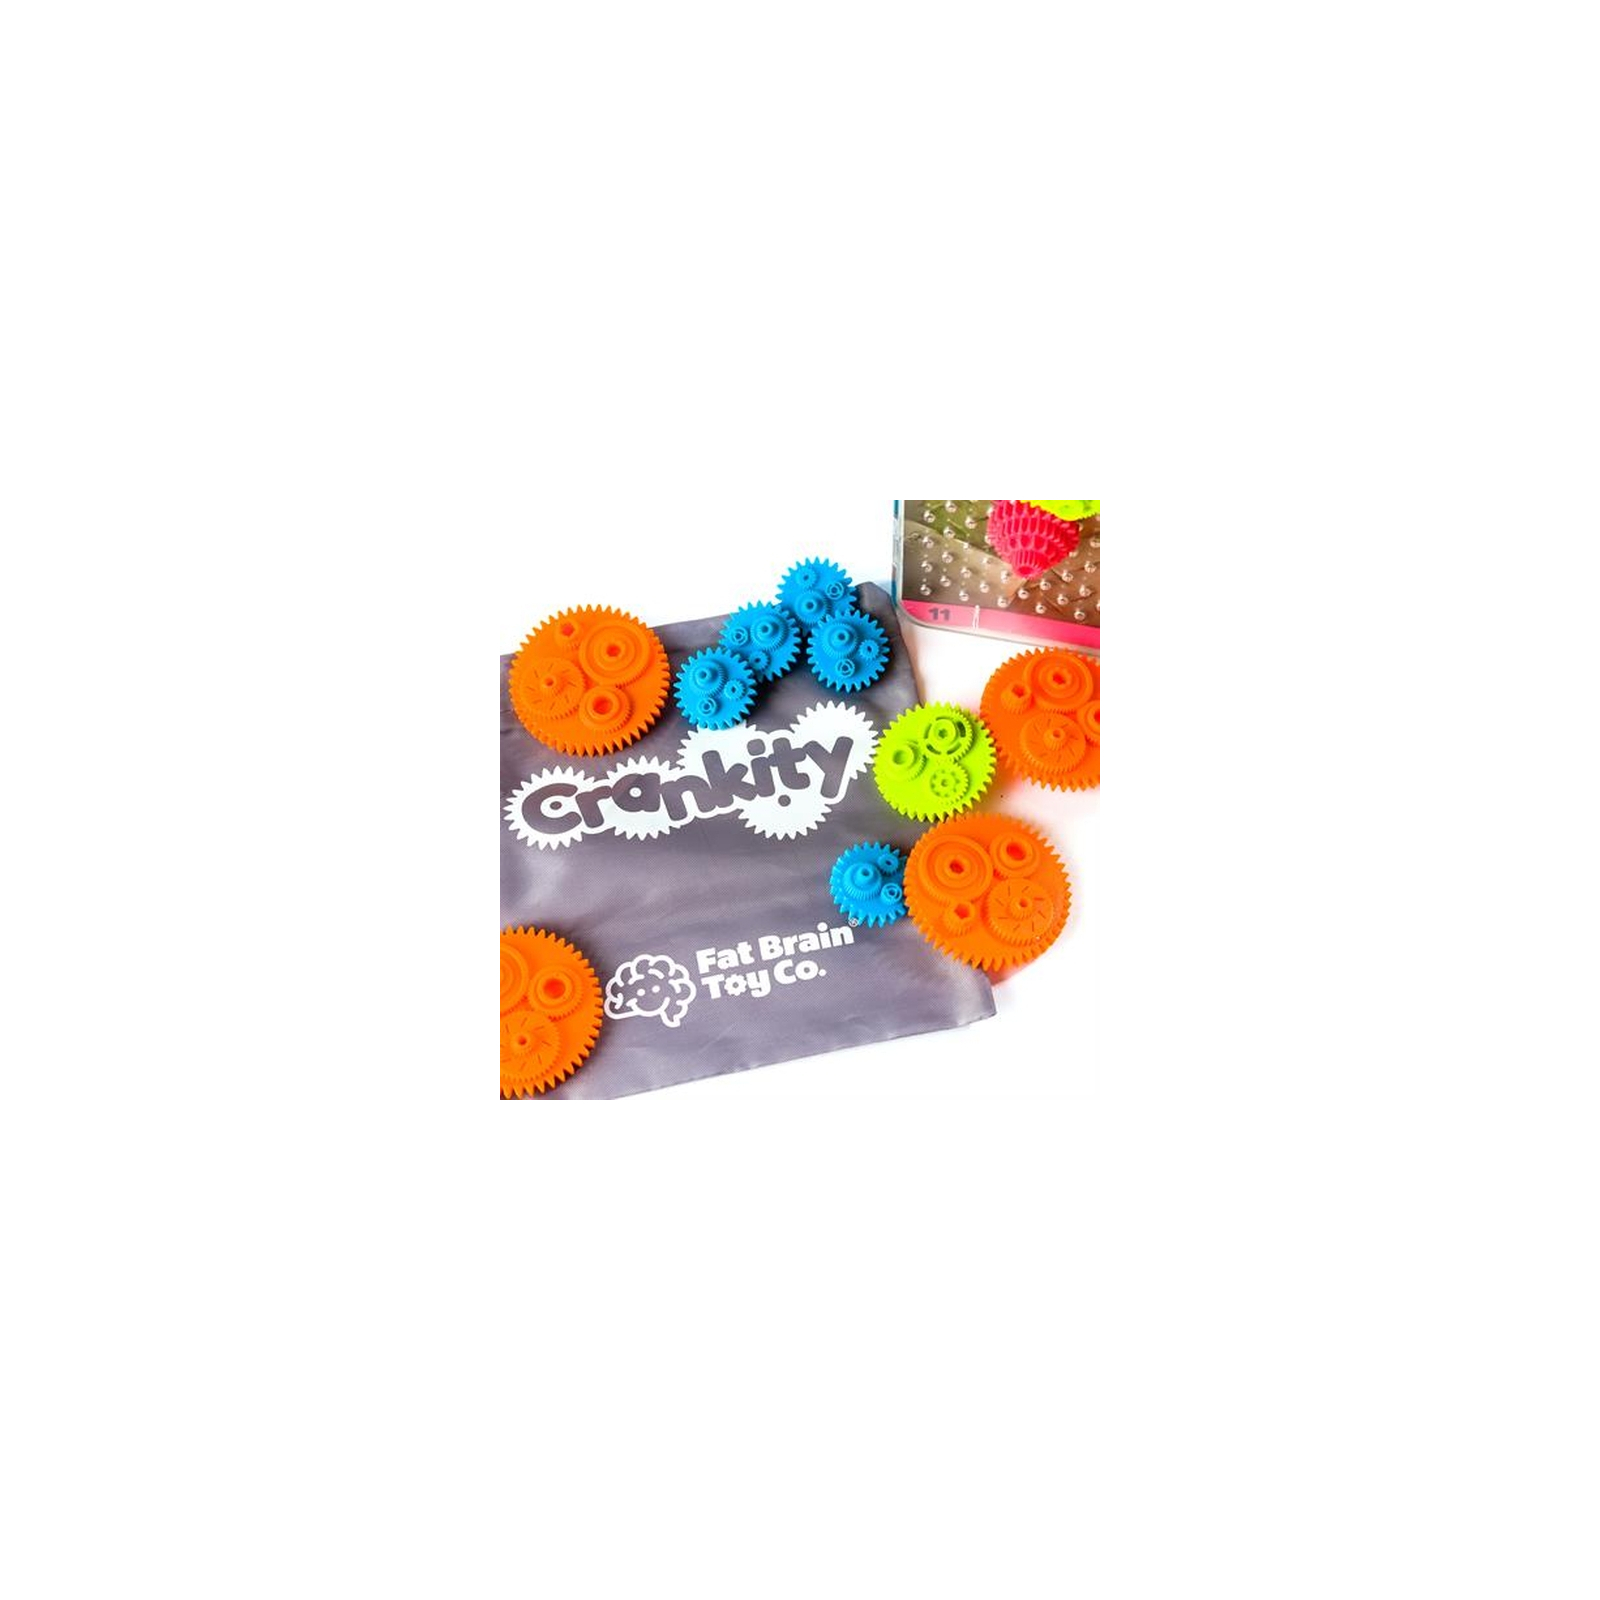 Развивающая игрушка Fat Brain Toys Crankity Разноцветные шестерни (FA140-1) изображение 6